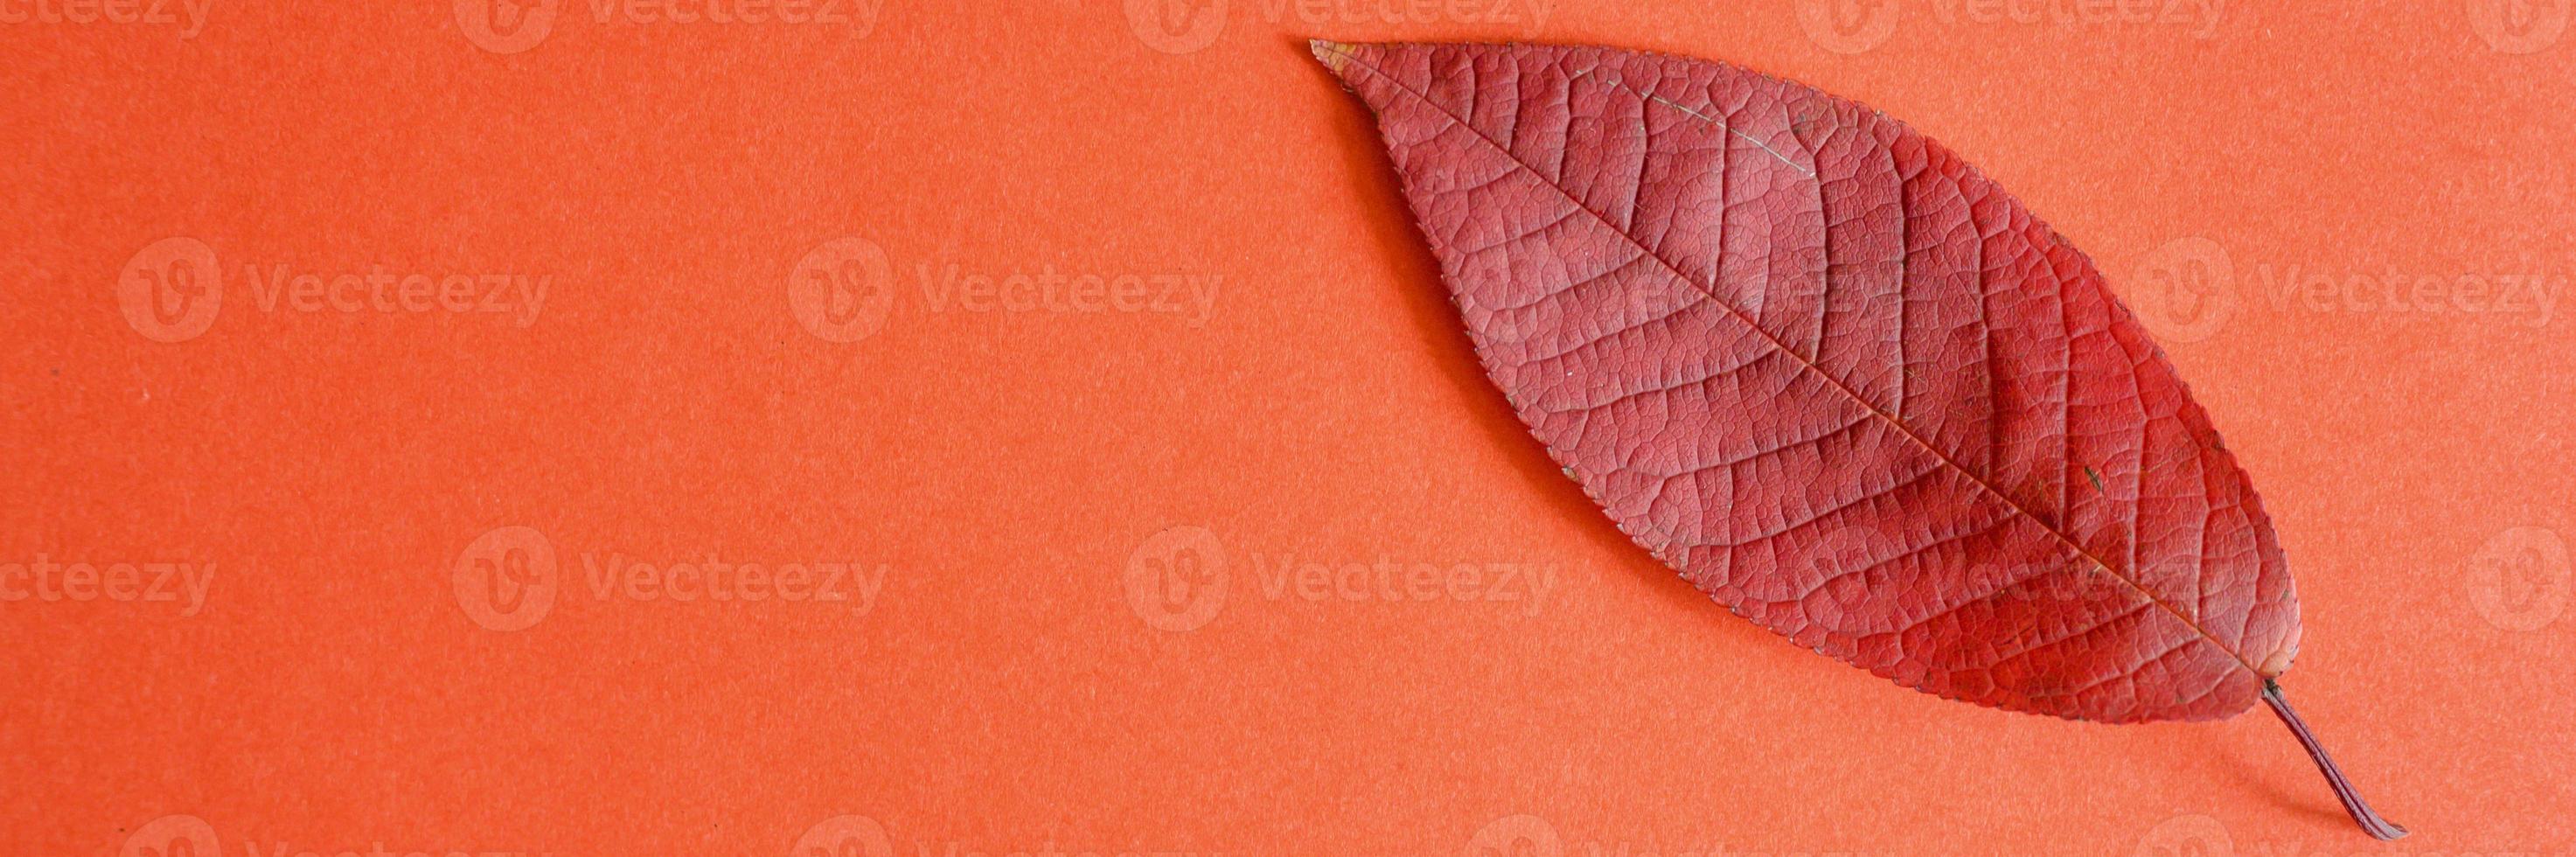 foglia di ciliegio autunno rosso caduta su uno sfondo di carta rossa foto